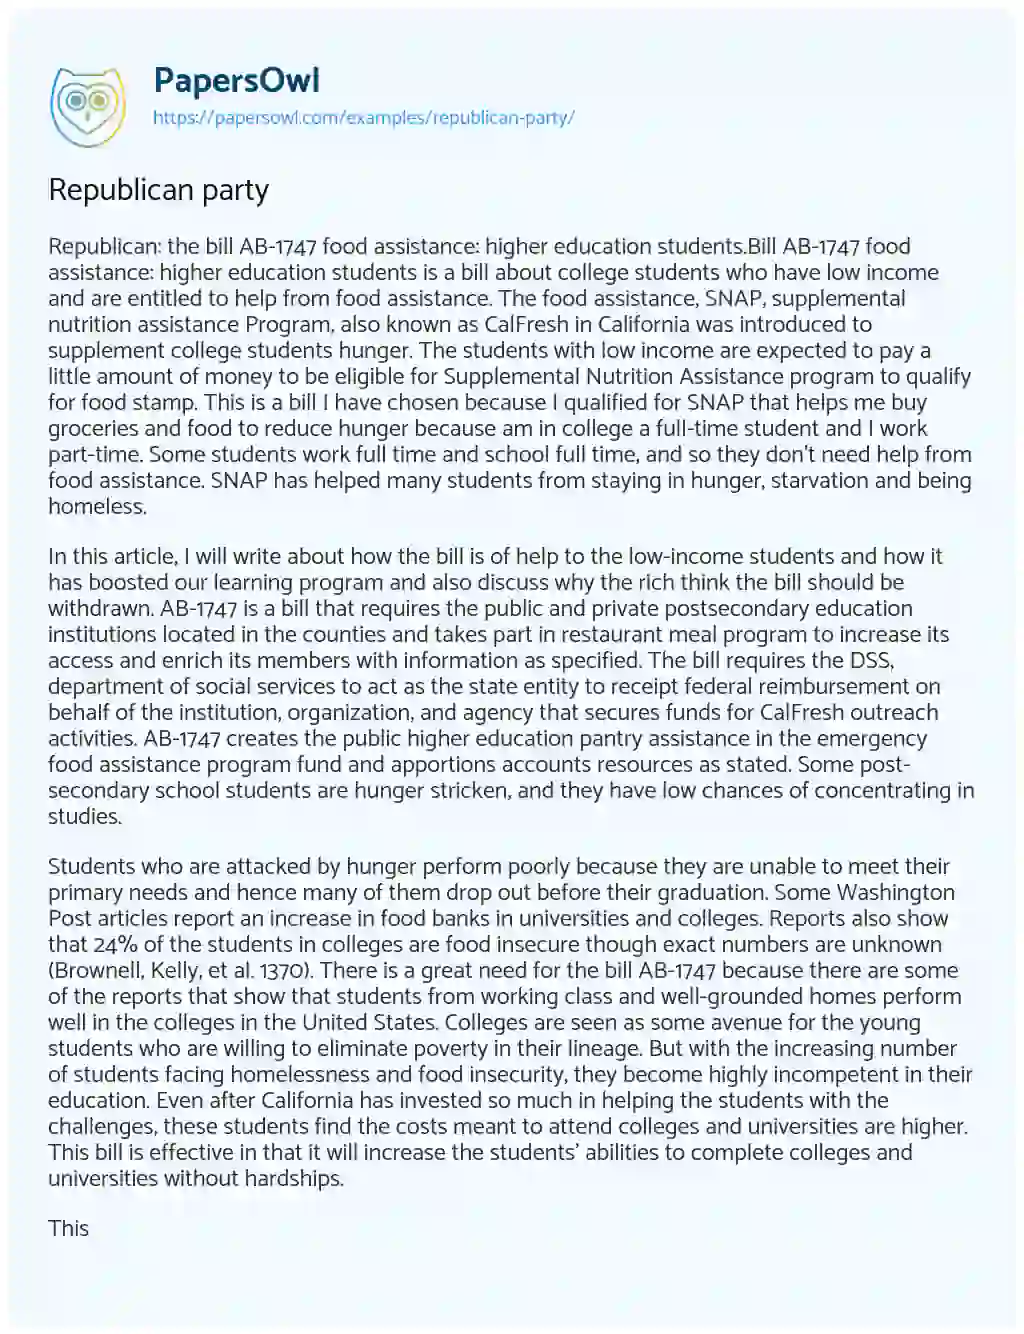 Republican Party essay